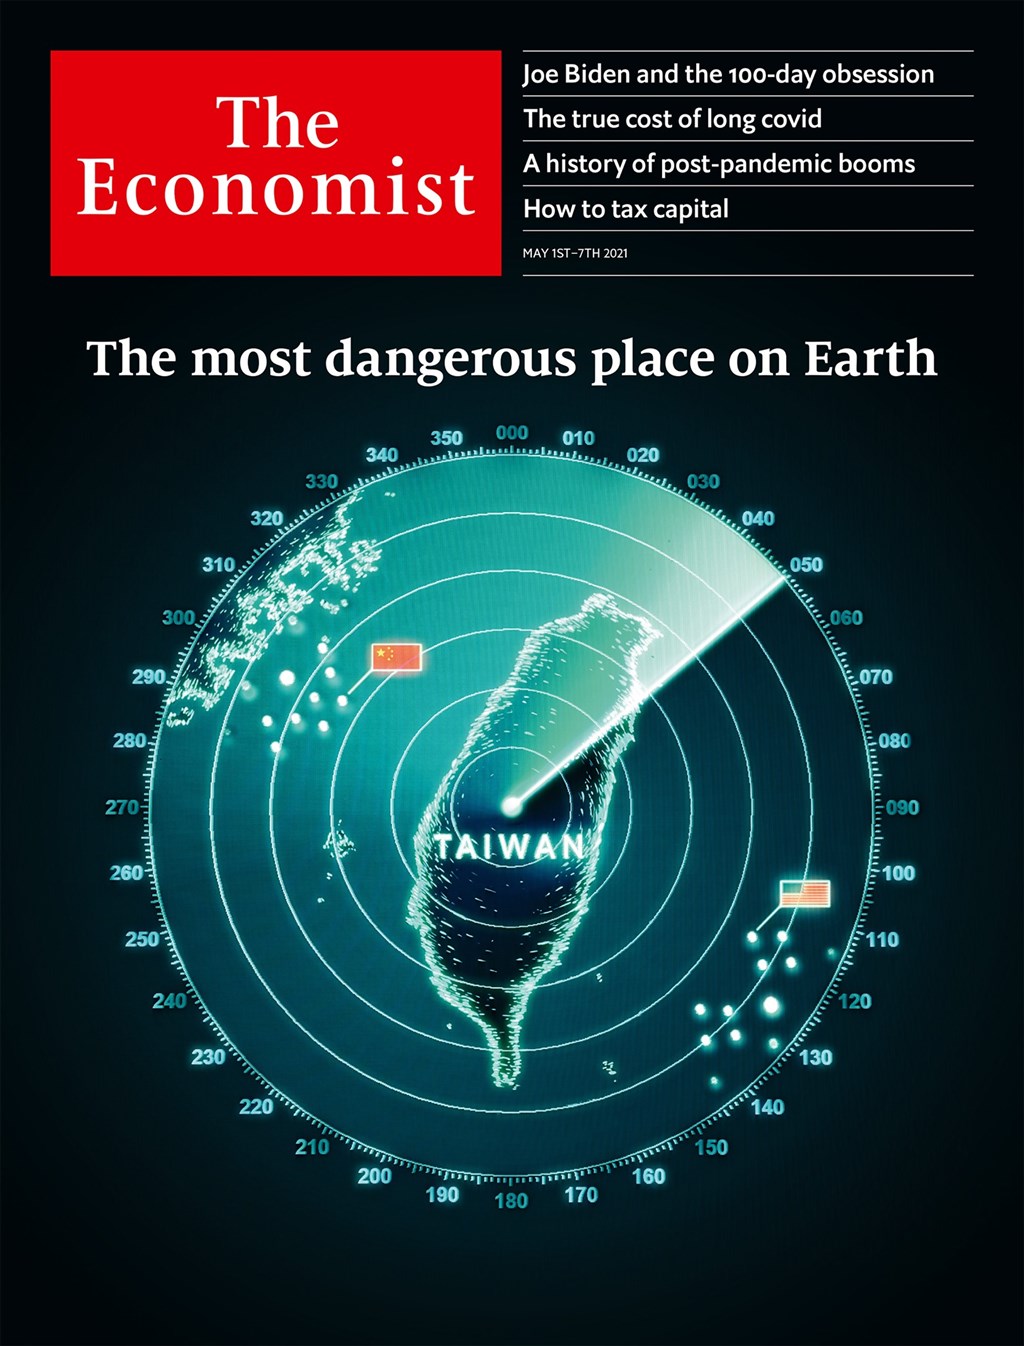 “經濟學人”30日公佈當期封面，以臺灣雷達圖爲主視覺，左有中共五星旗、右有美國星條旗，並稱這是“地球上最危險地區”。